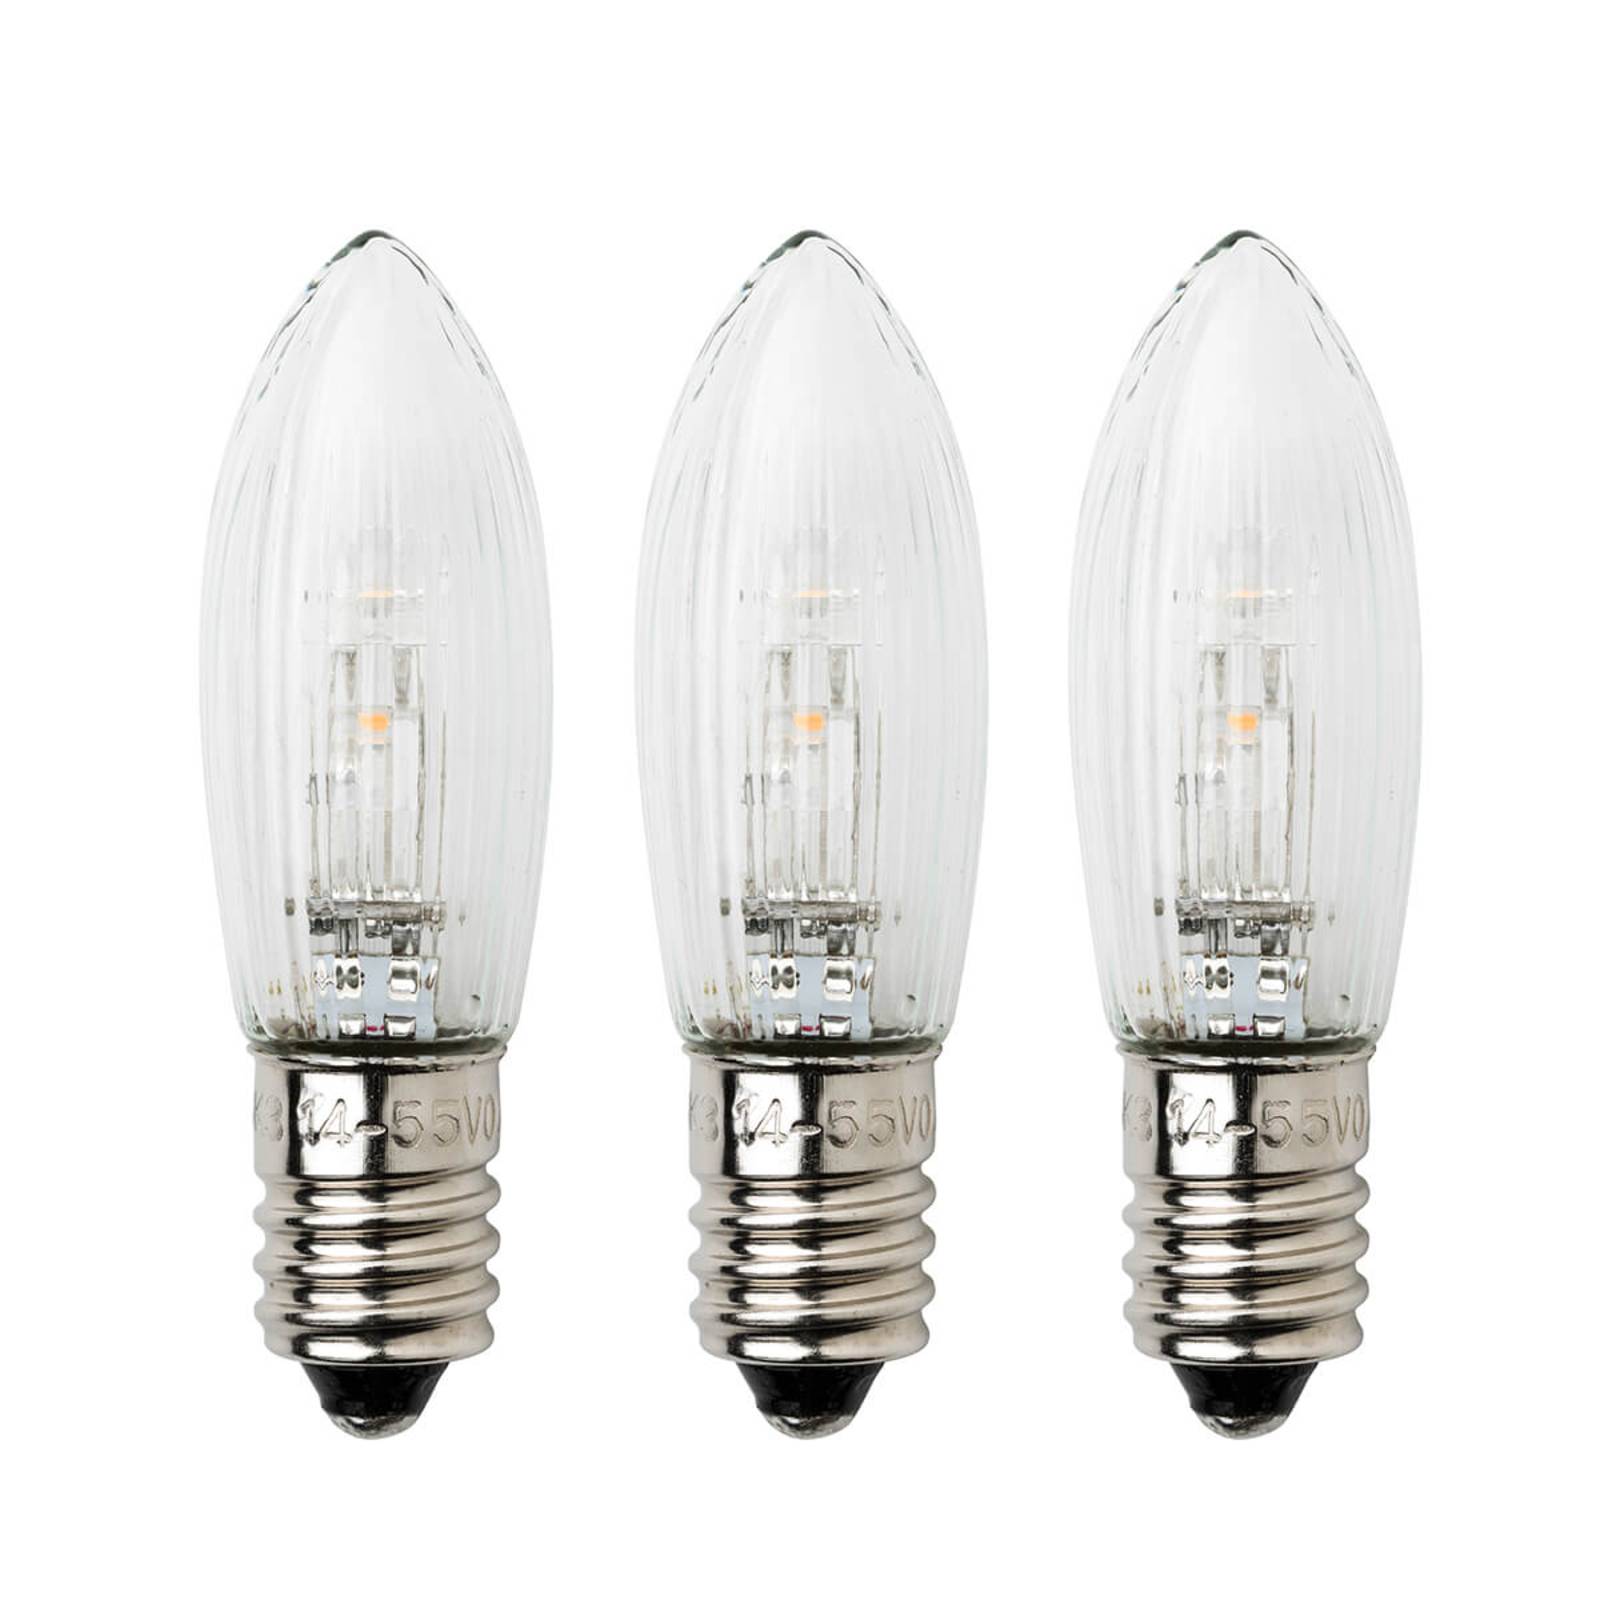 Ampoules de rechange 14V 3W pour chandelier électrique